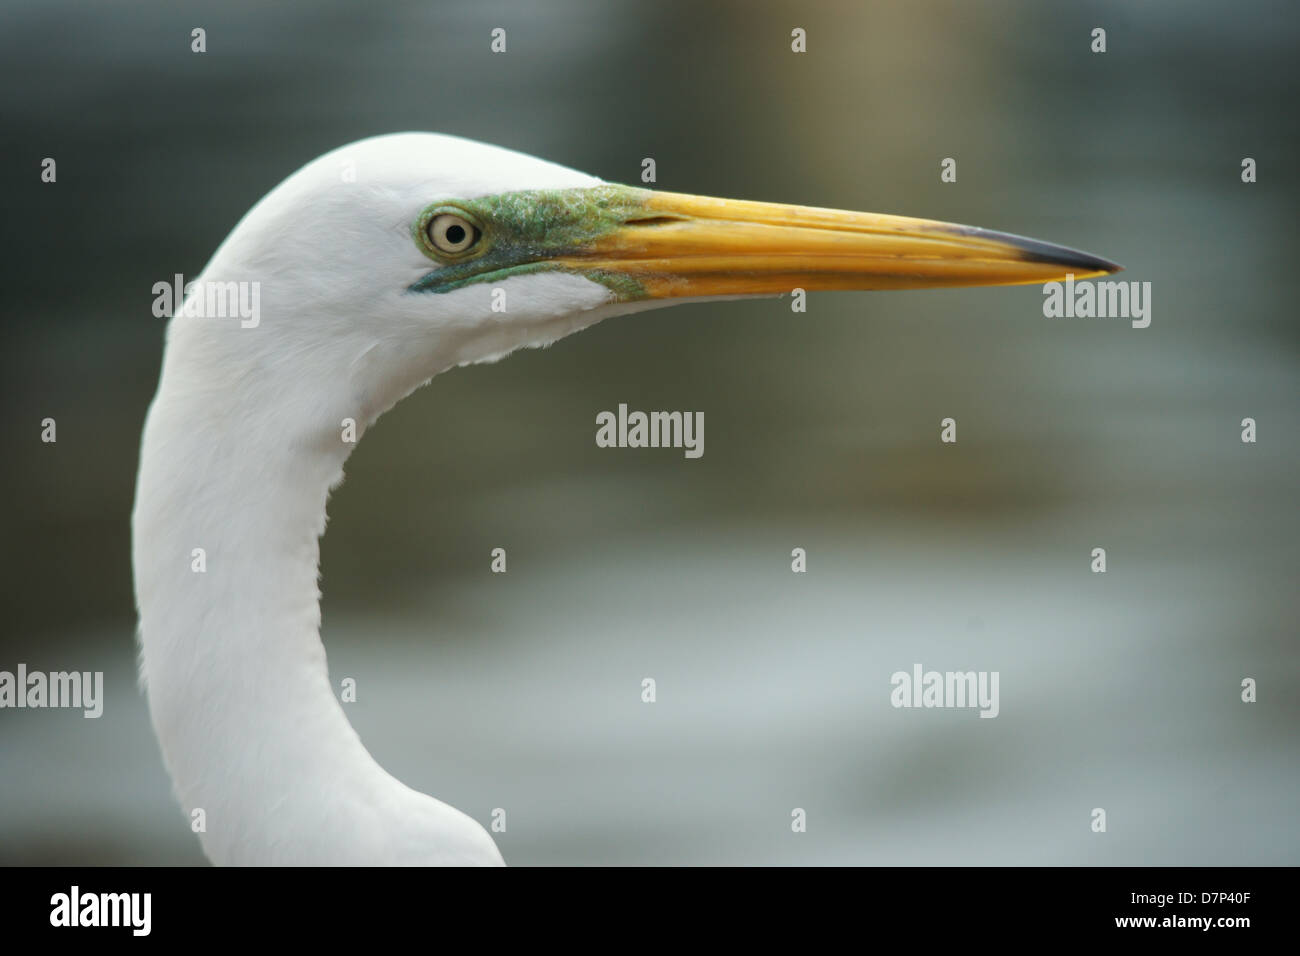 Headshot of a white egret Stock Photo